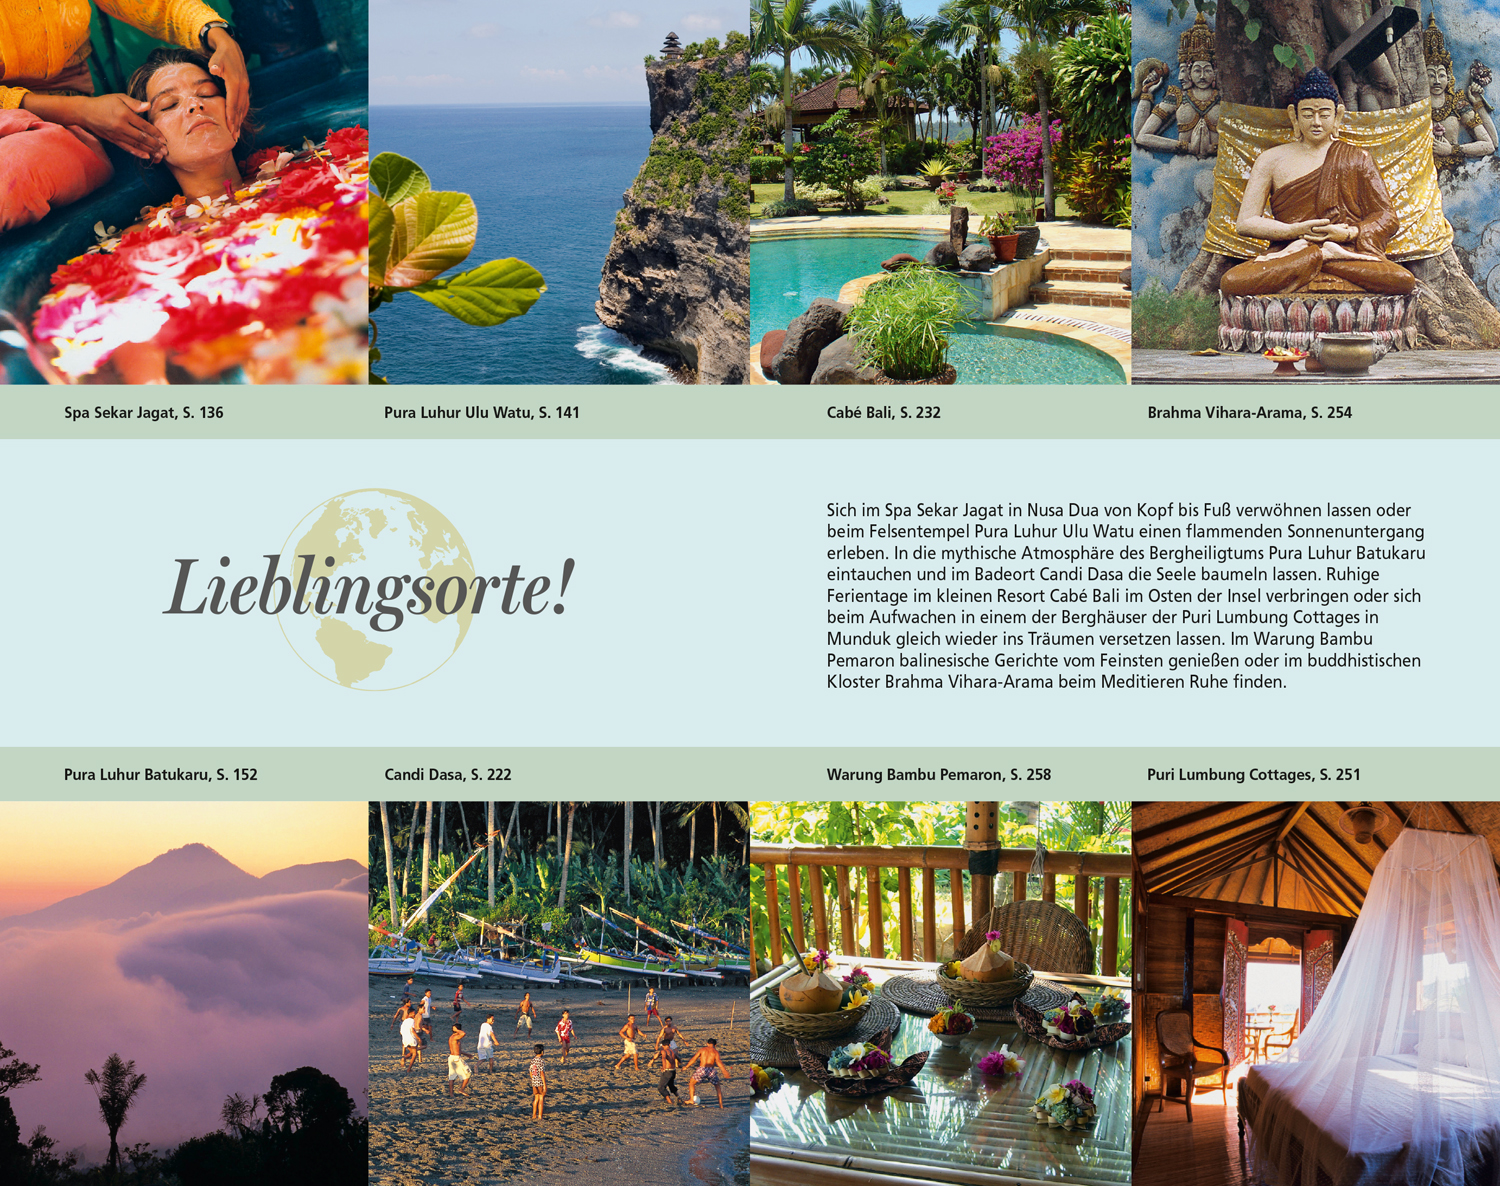 DuMont Reise-Taschenbuch Reiseführer Bali & Lombok